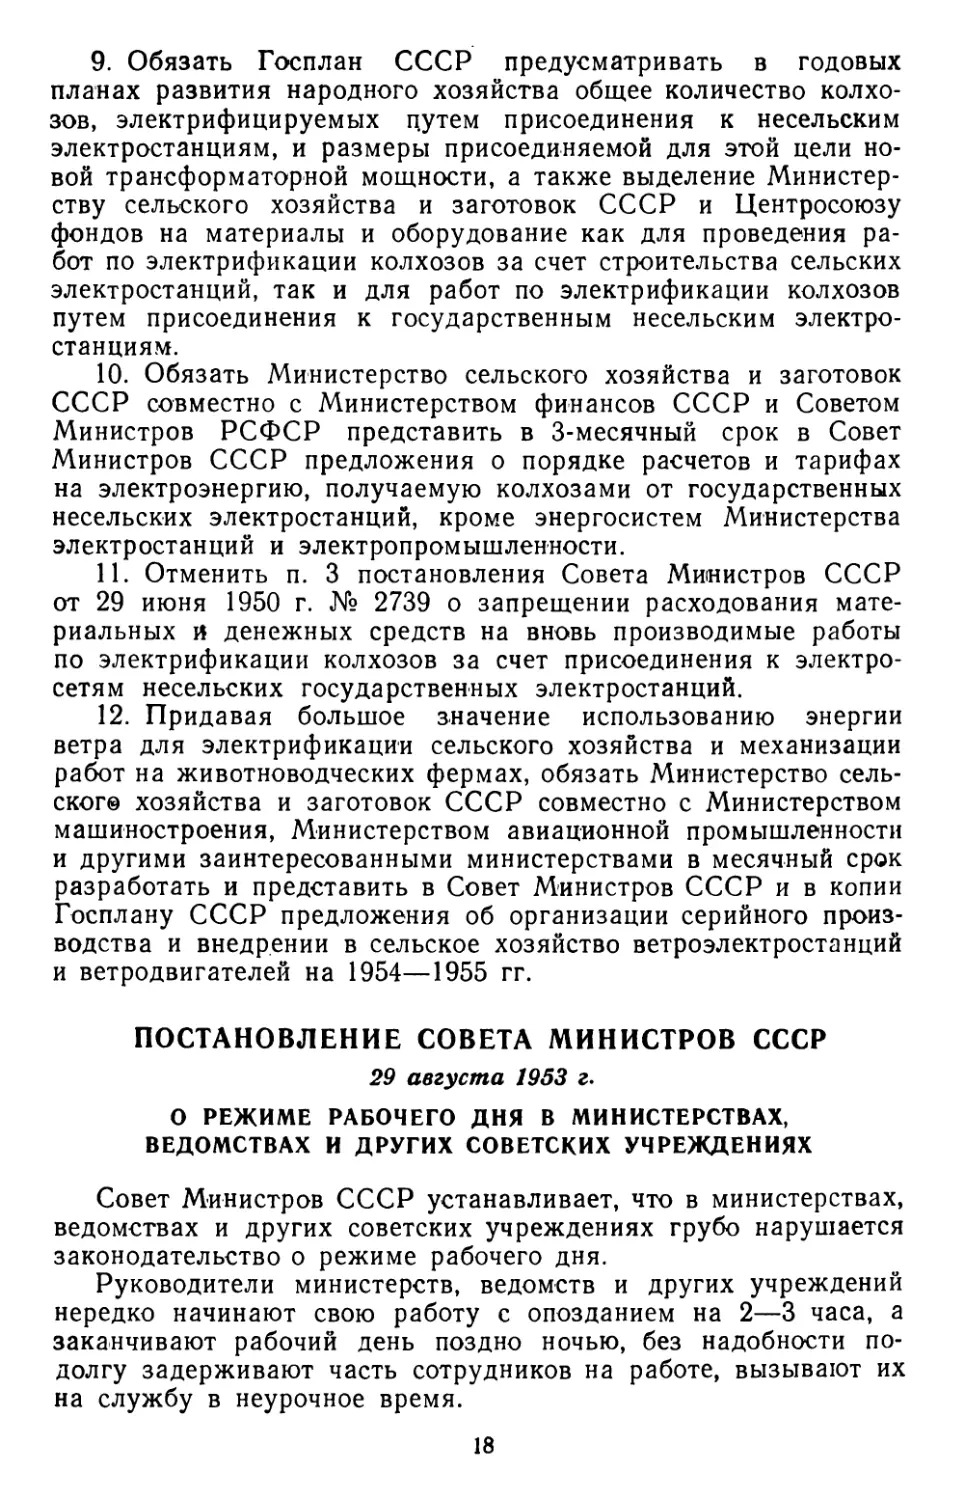 Постановление Совета Министров СССР, 29 августа 1953 г. О режиме рабочего дня в министерствах, ведомствах и других советских учреждениях